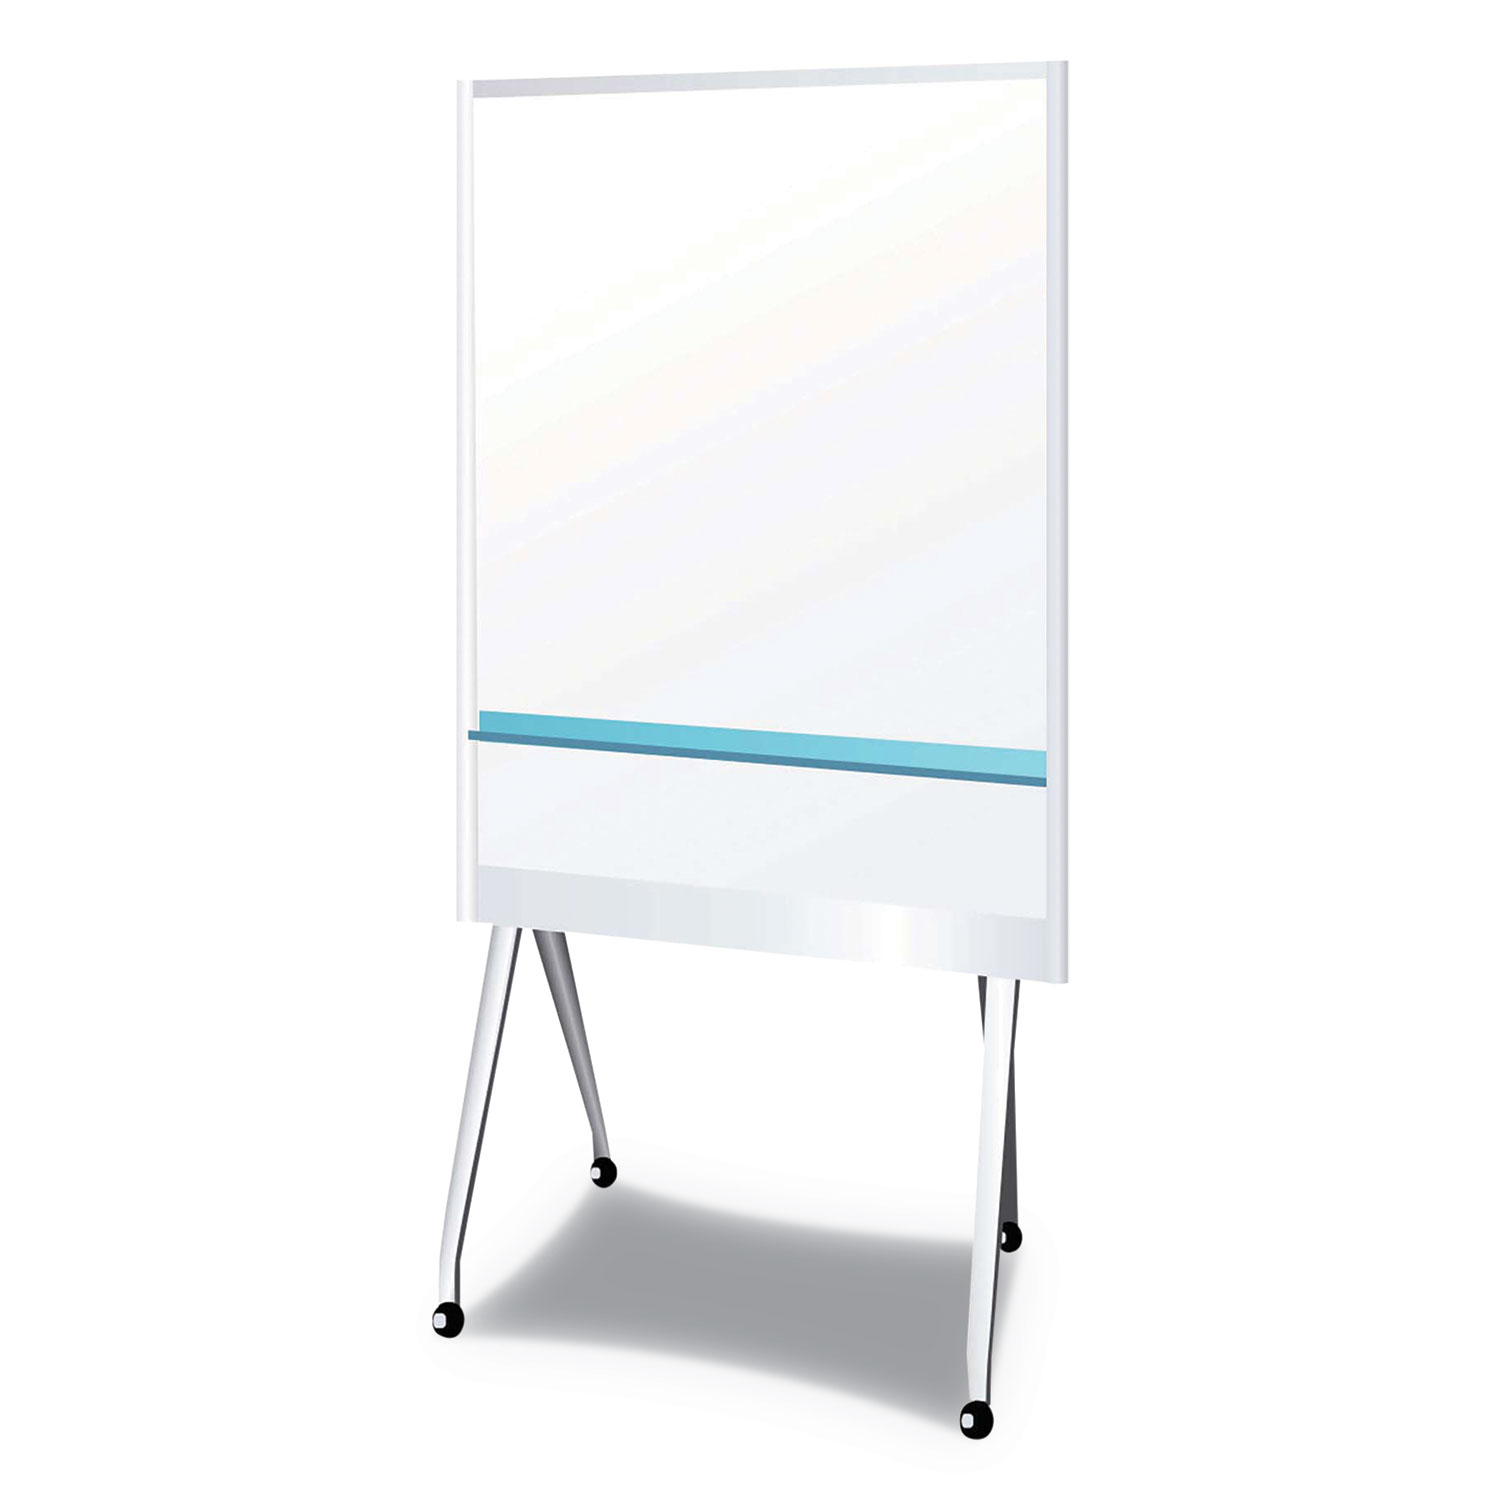  PLUS 428-283 Mobile Partition Board LG, 38 3/10 x 70 4/5, White, Aluminum Frame (PLS912MPBLG) 